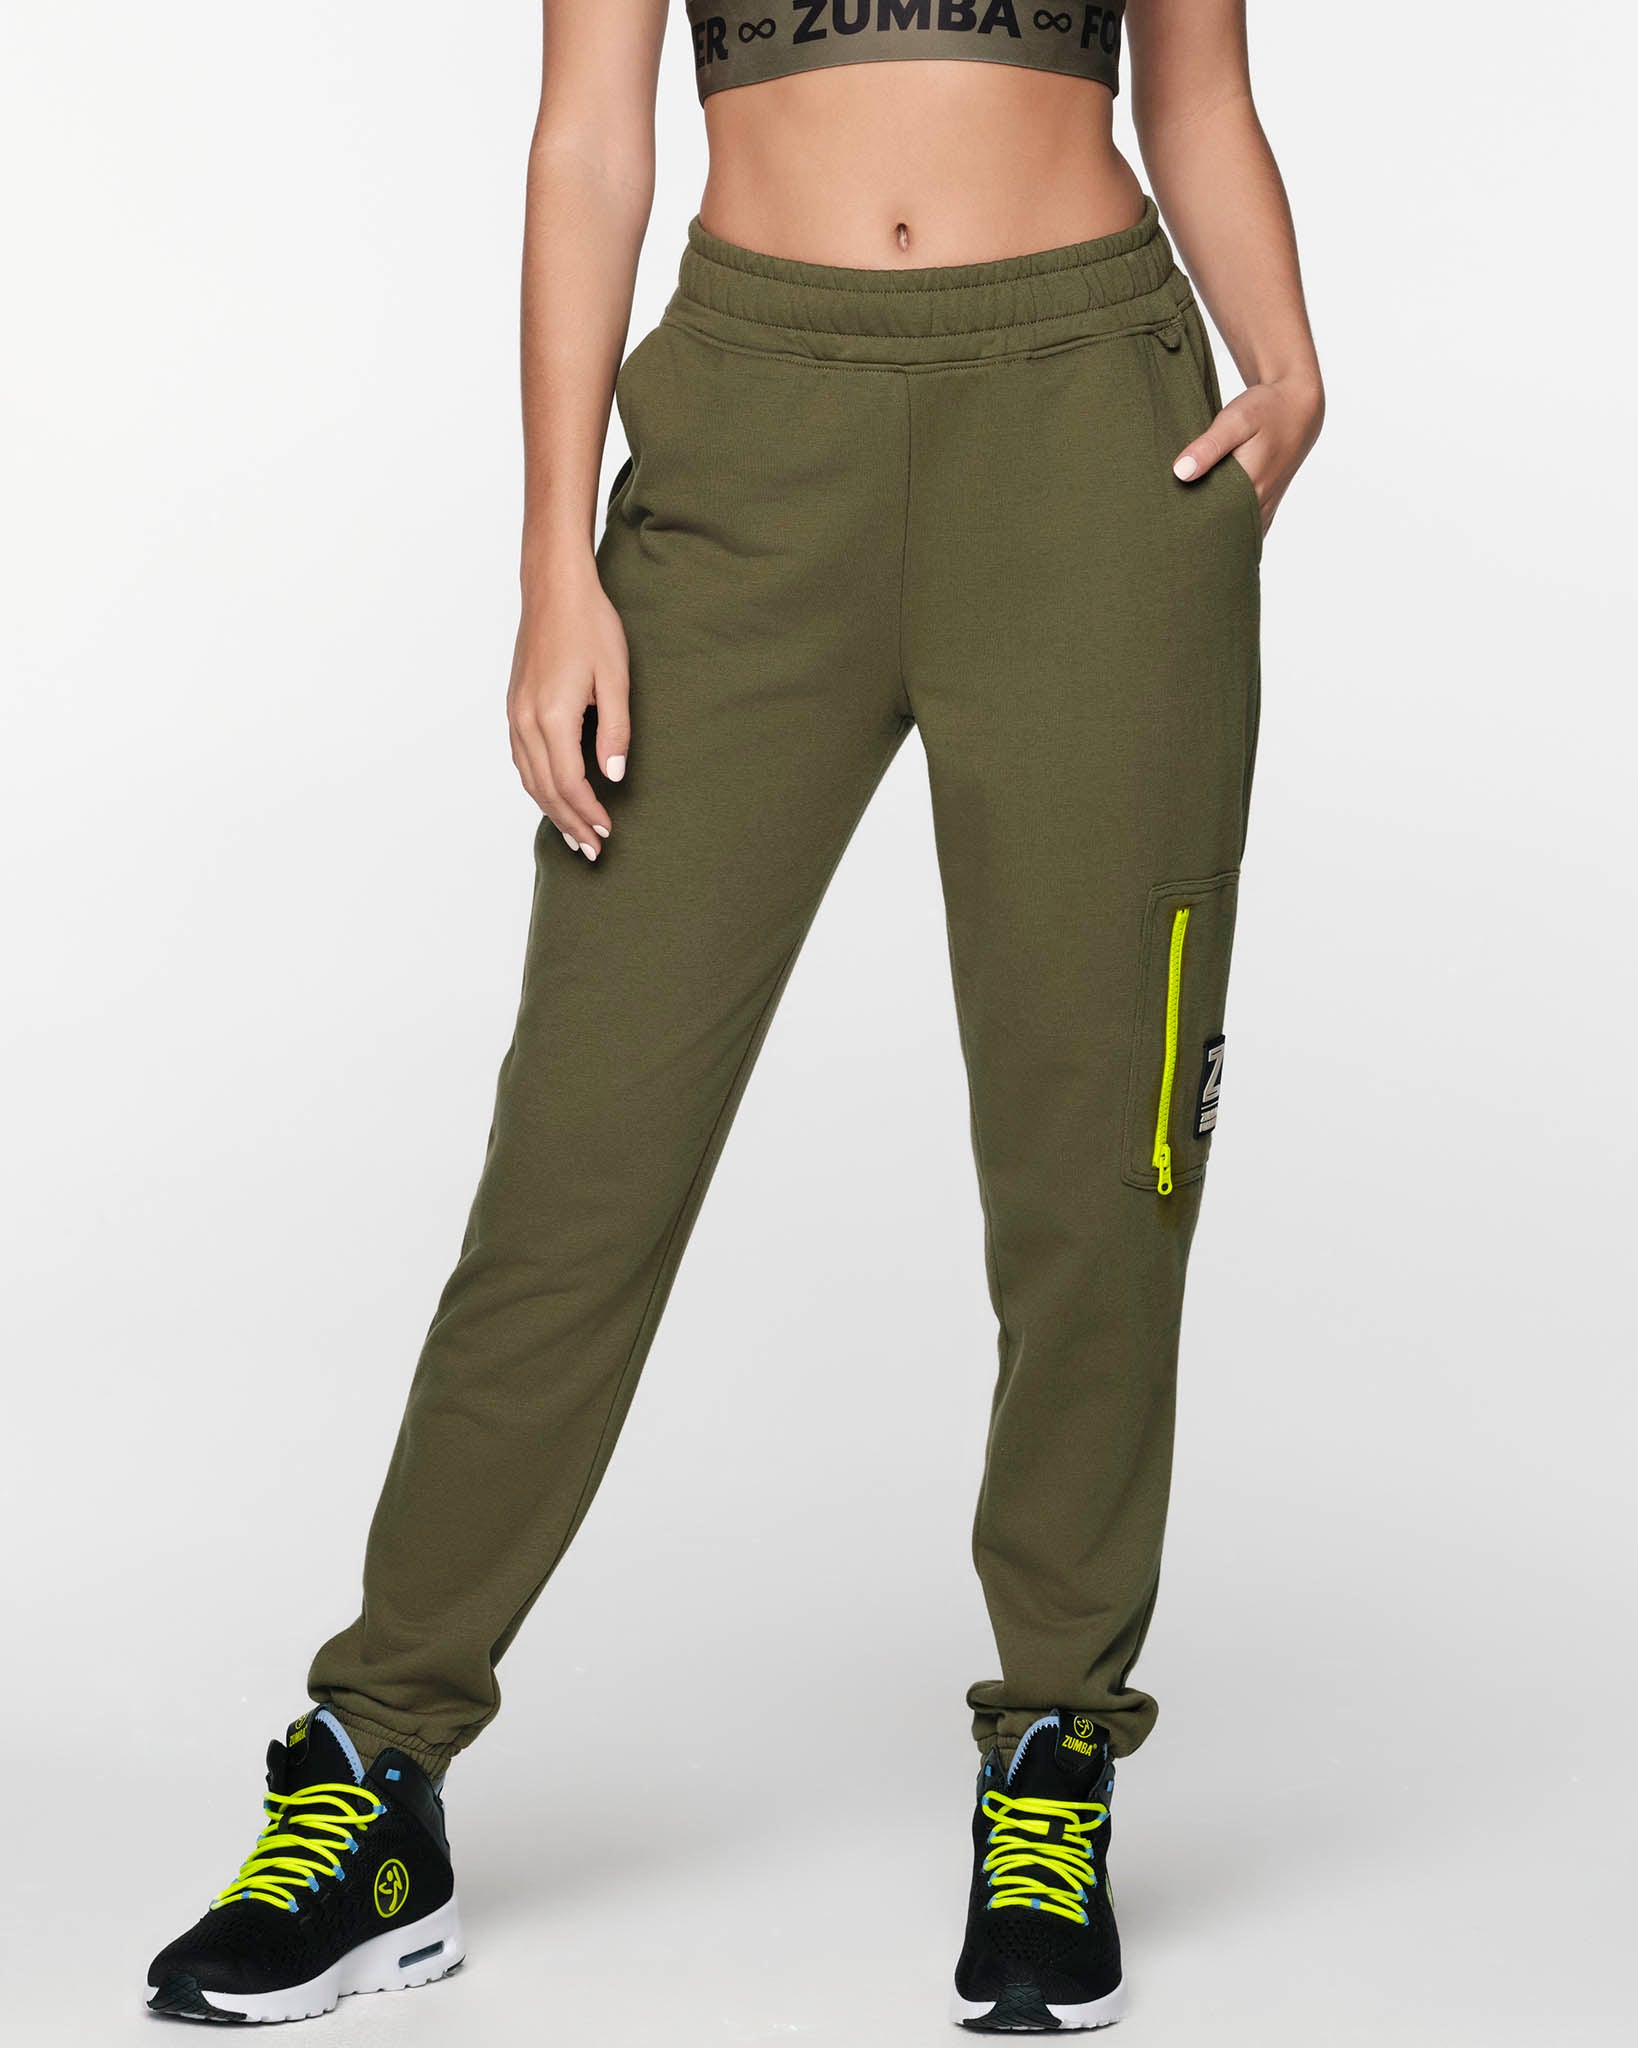 Zumba Fitness Women's Sweatpants